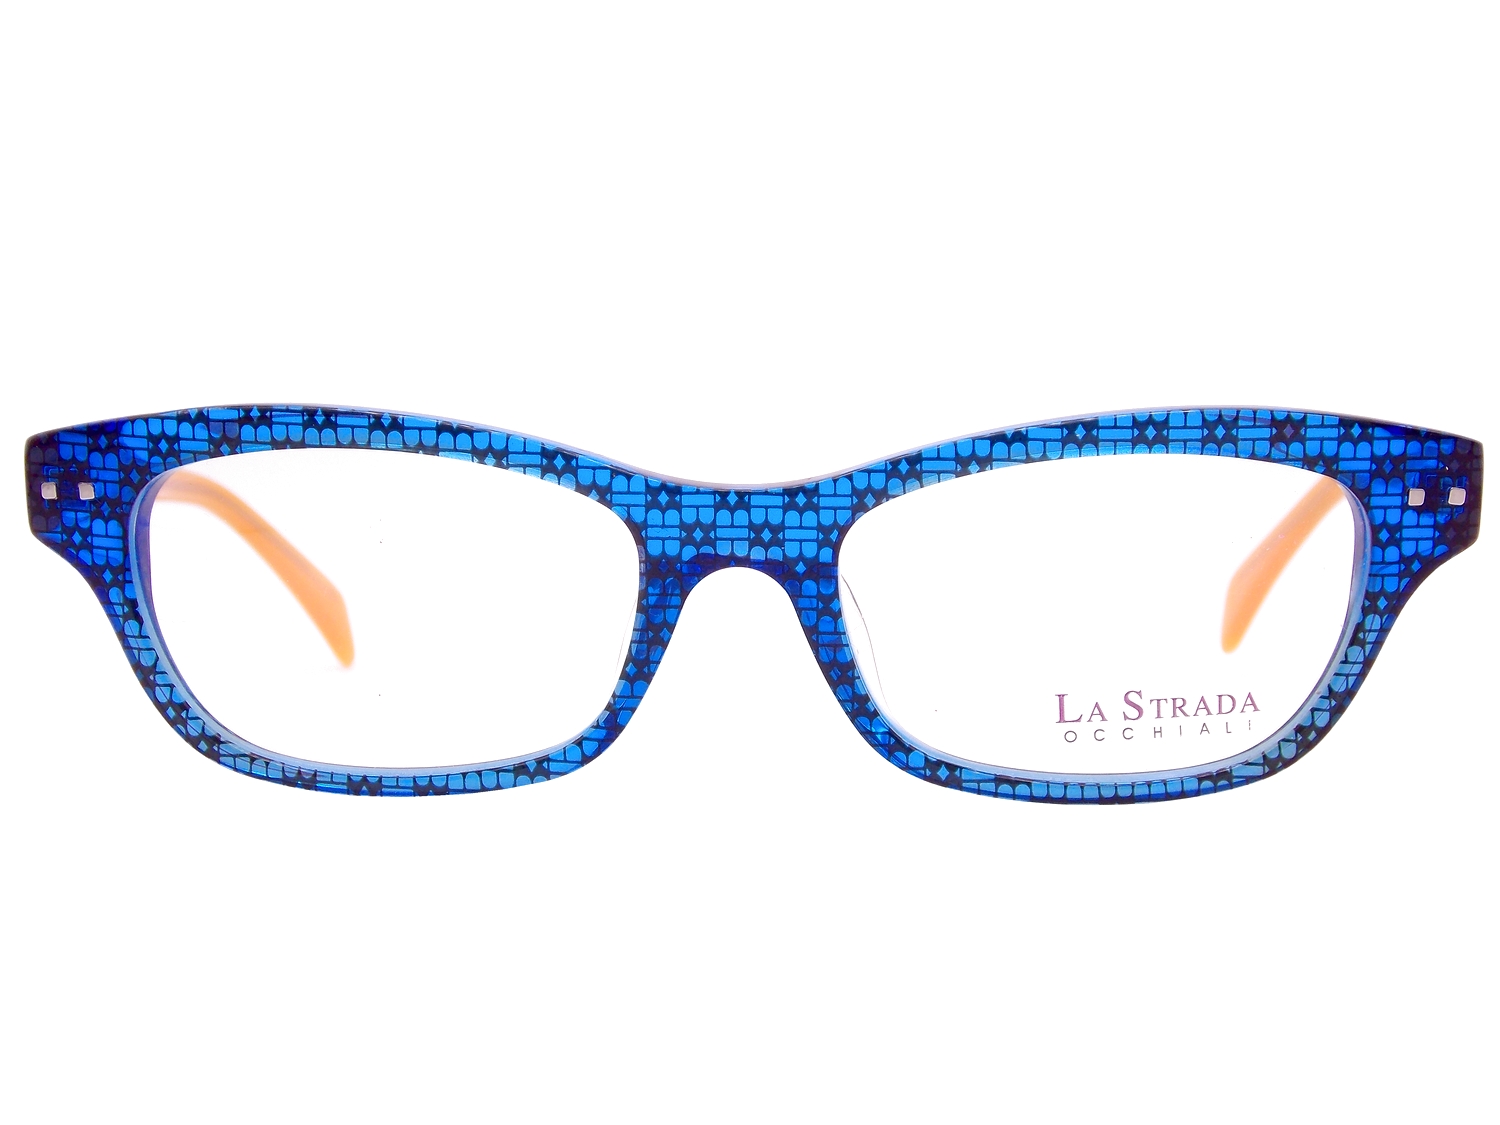 LaStrada 9129 1 occhiali